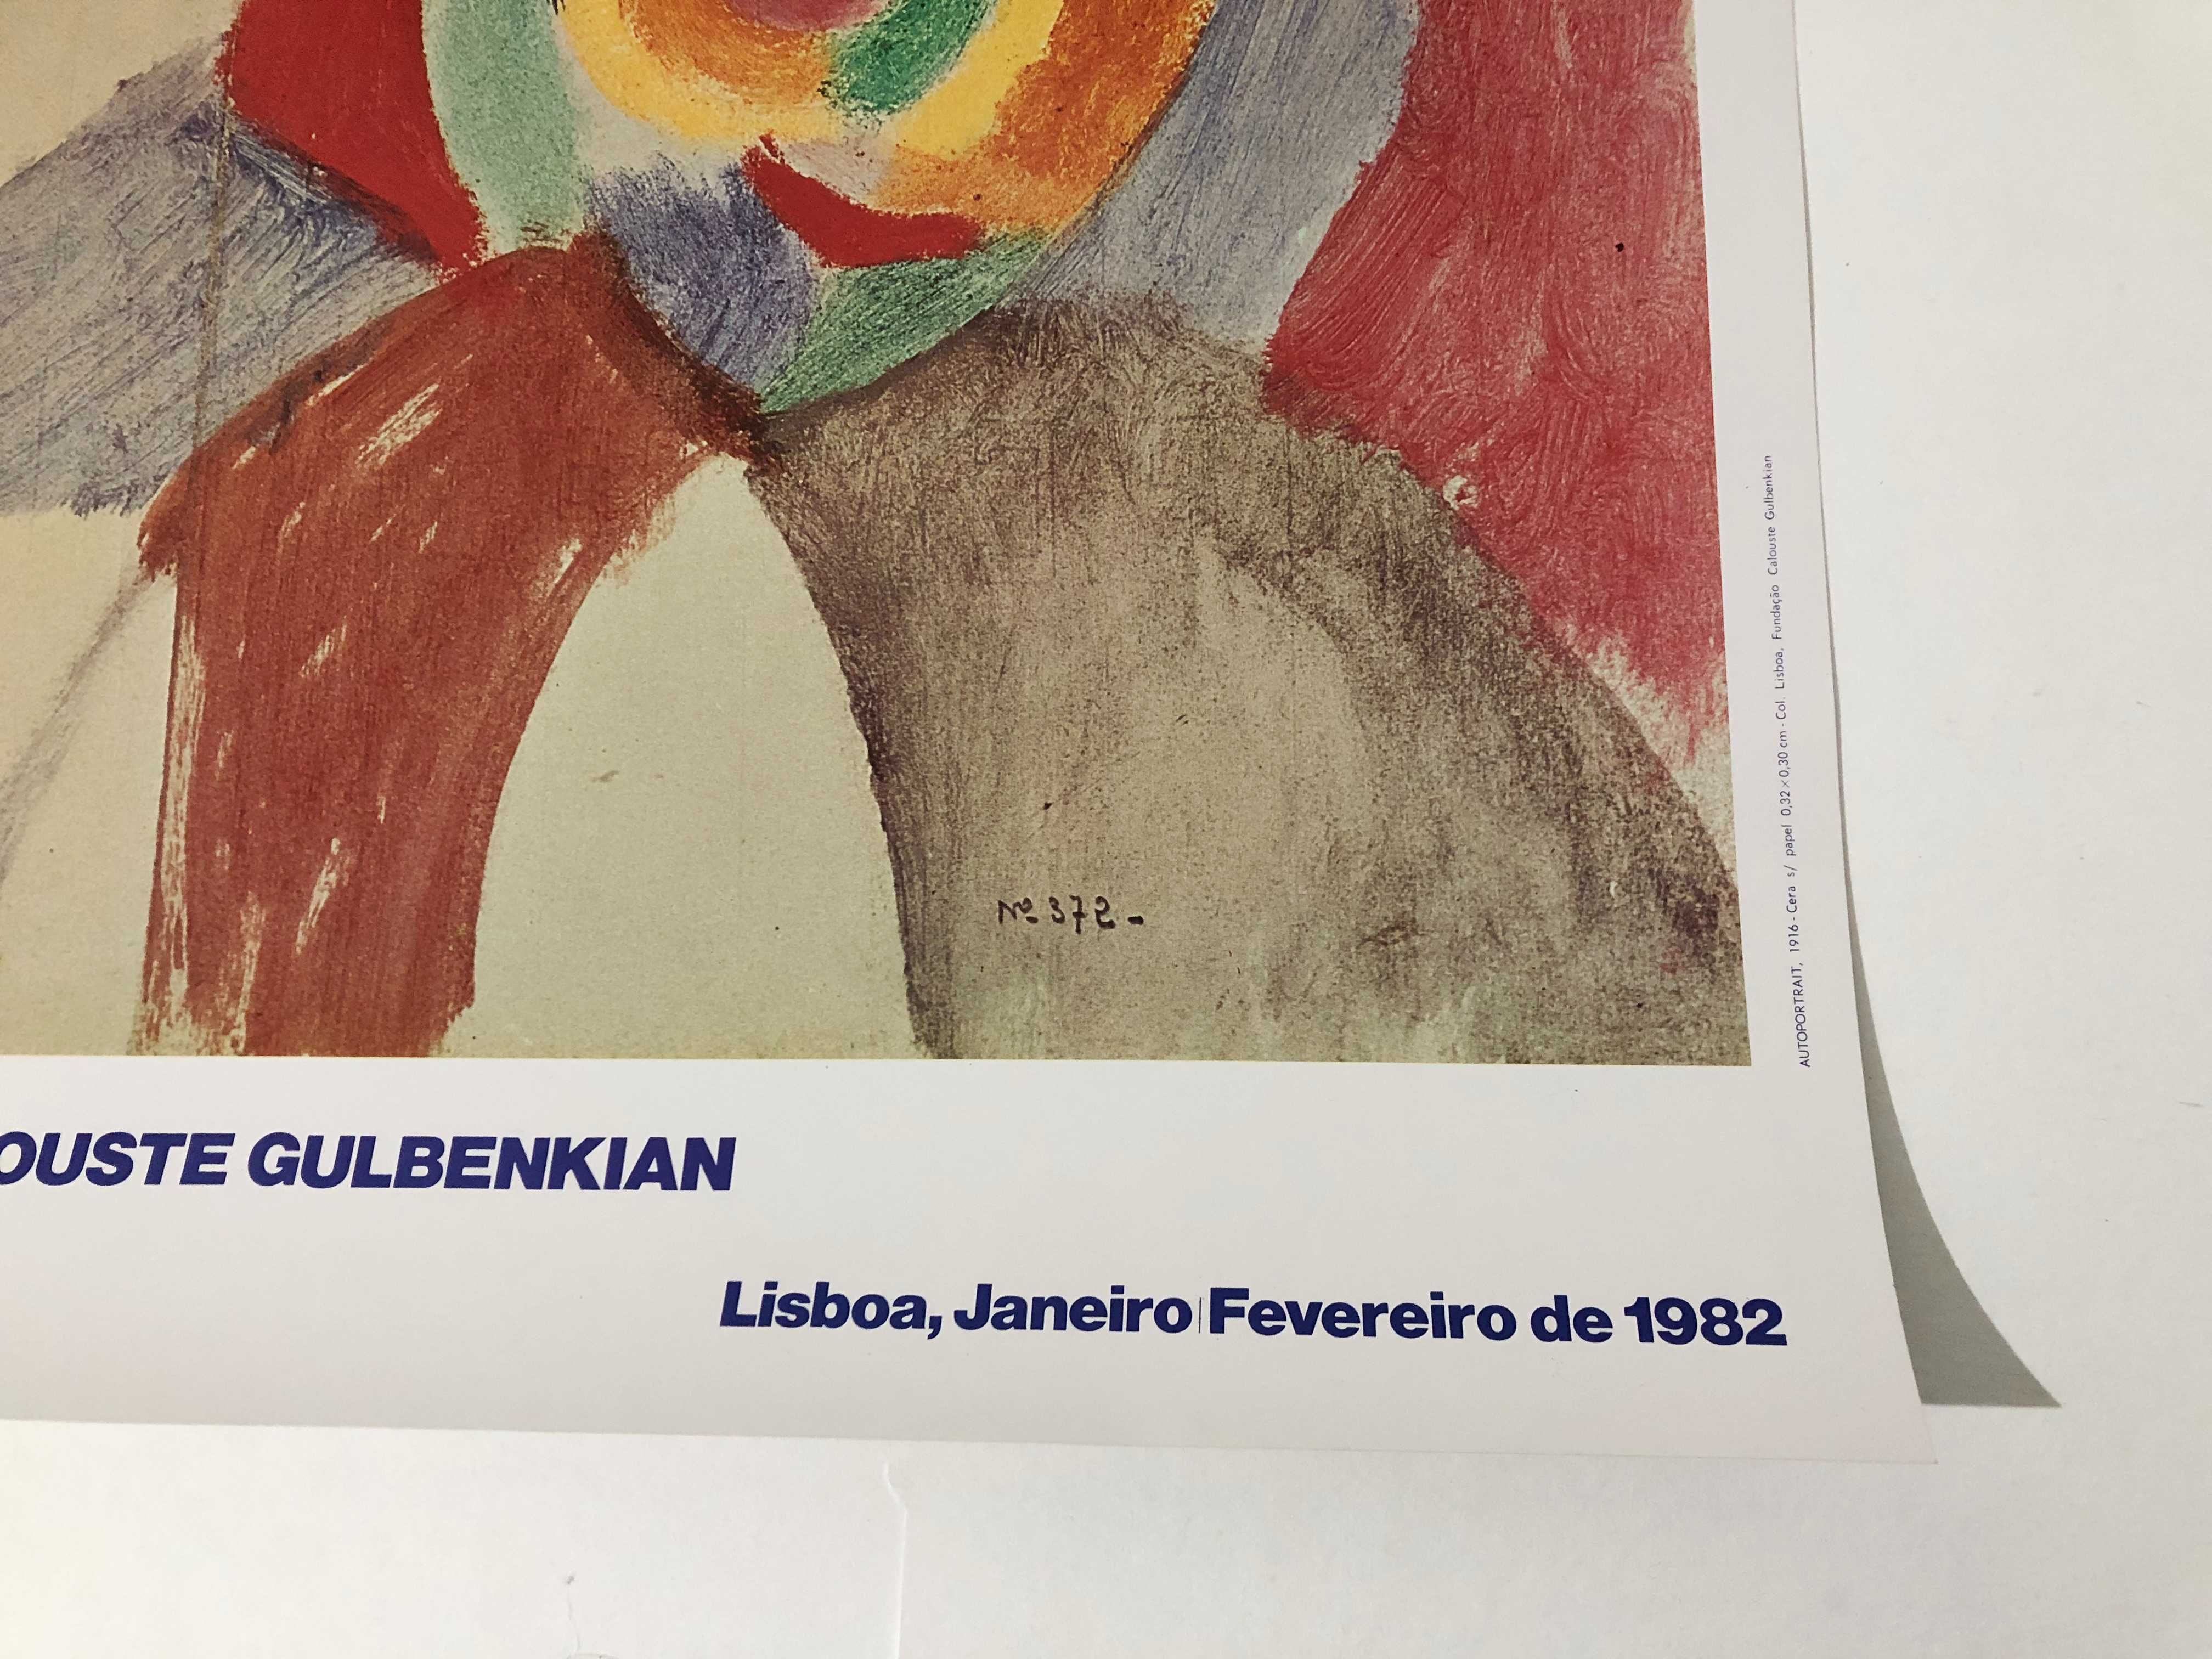 Cartaz exposição Robert e Sonia Delaunay 1982 (F. Calouste Gulbenkian)